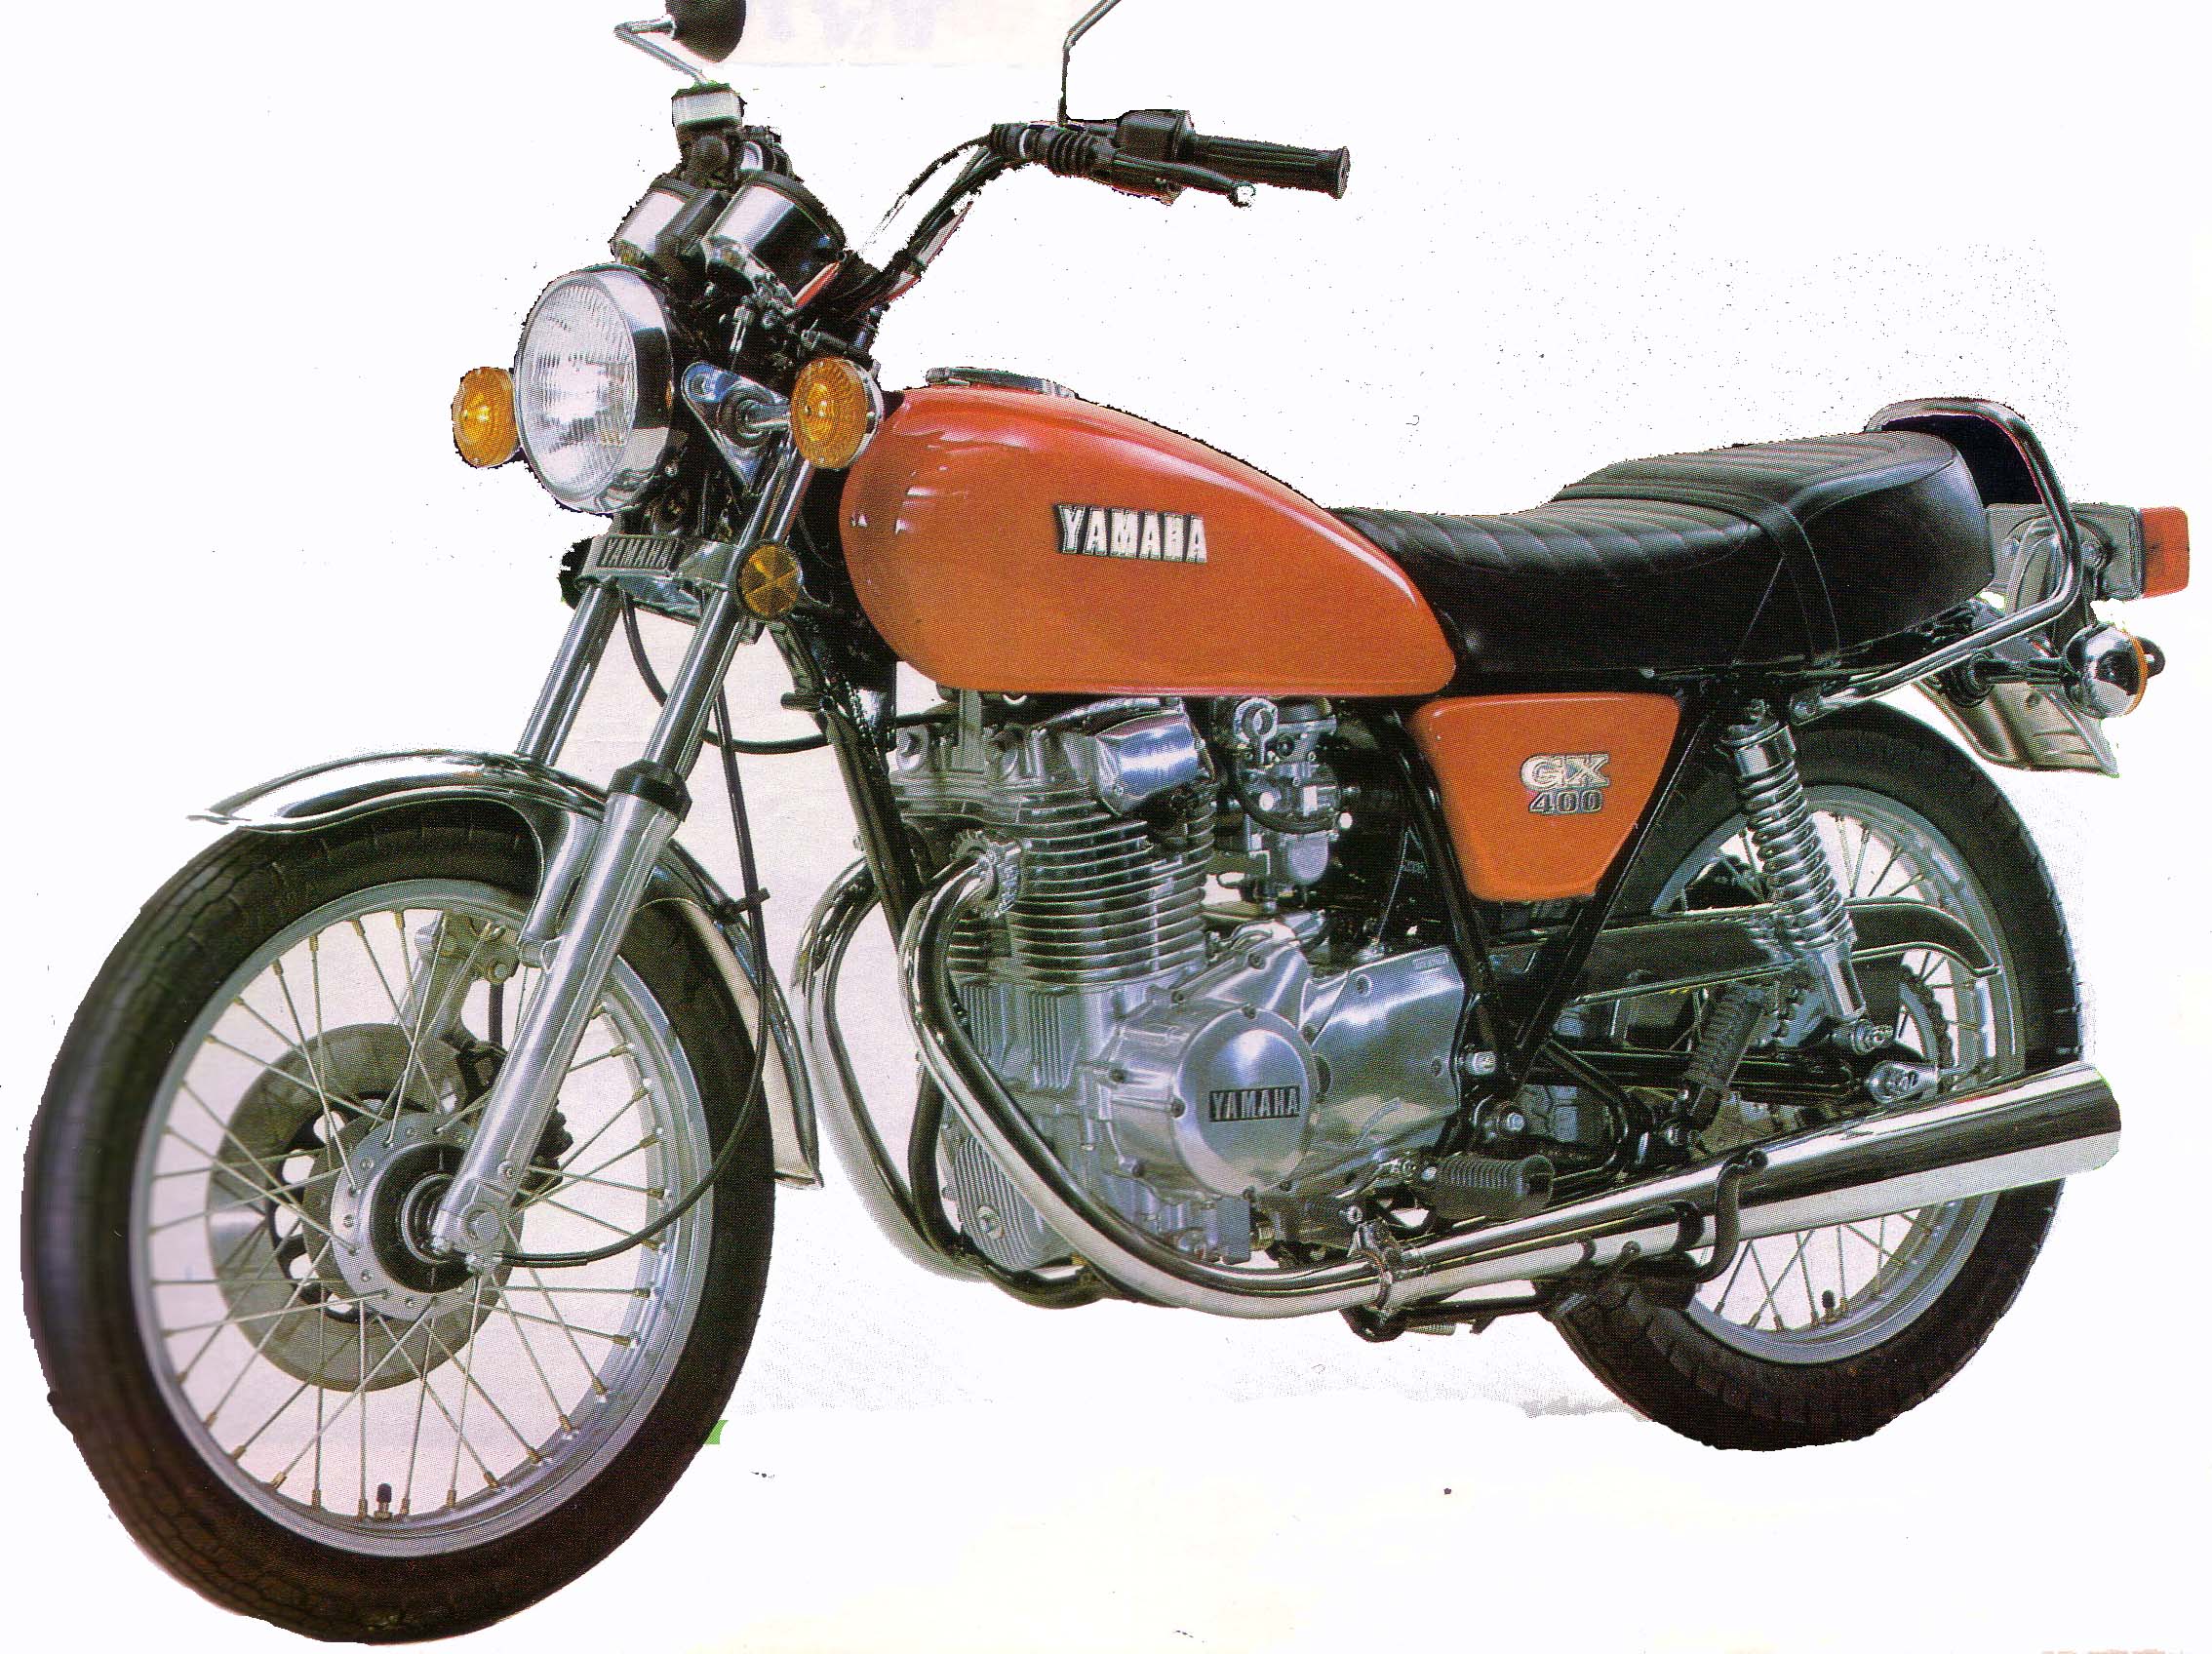 ヤマハGX400/250 YAMAHA GX400/250: 70年代のオートバイ